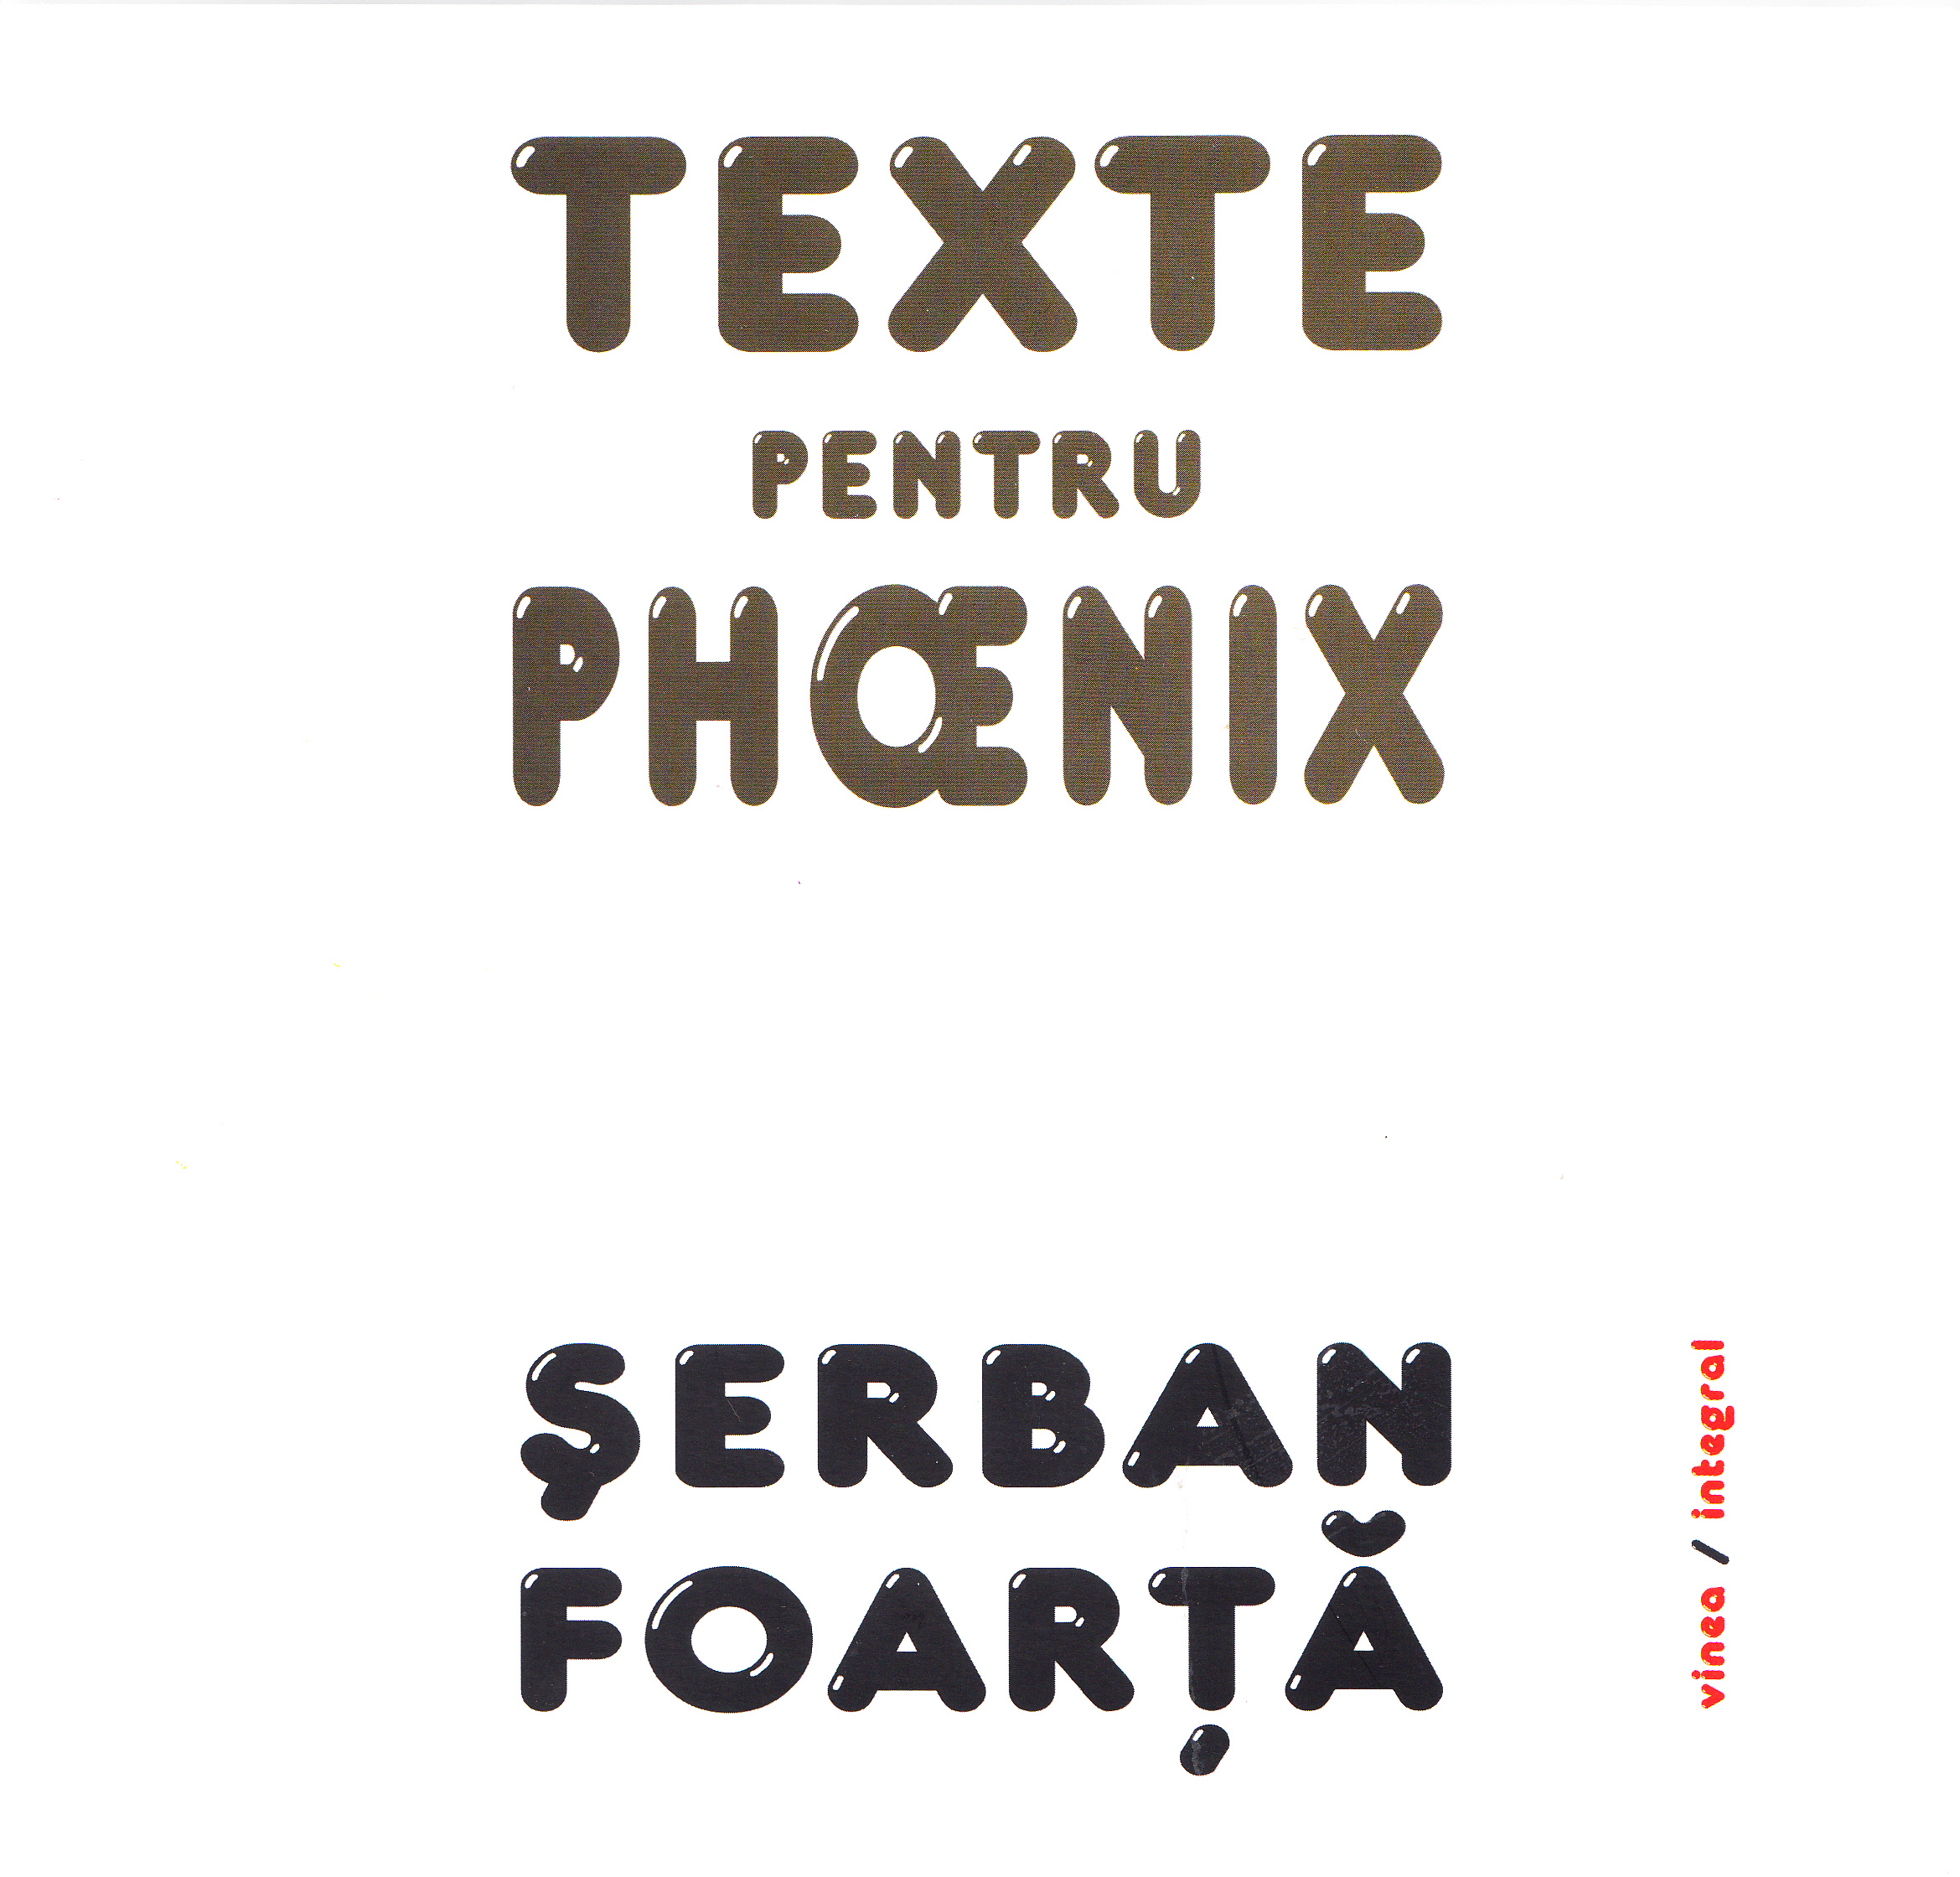 Texte pentru Phoenix - Serban Foarta